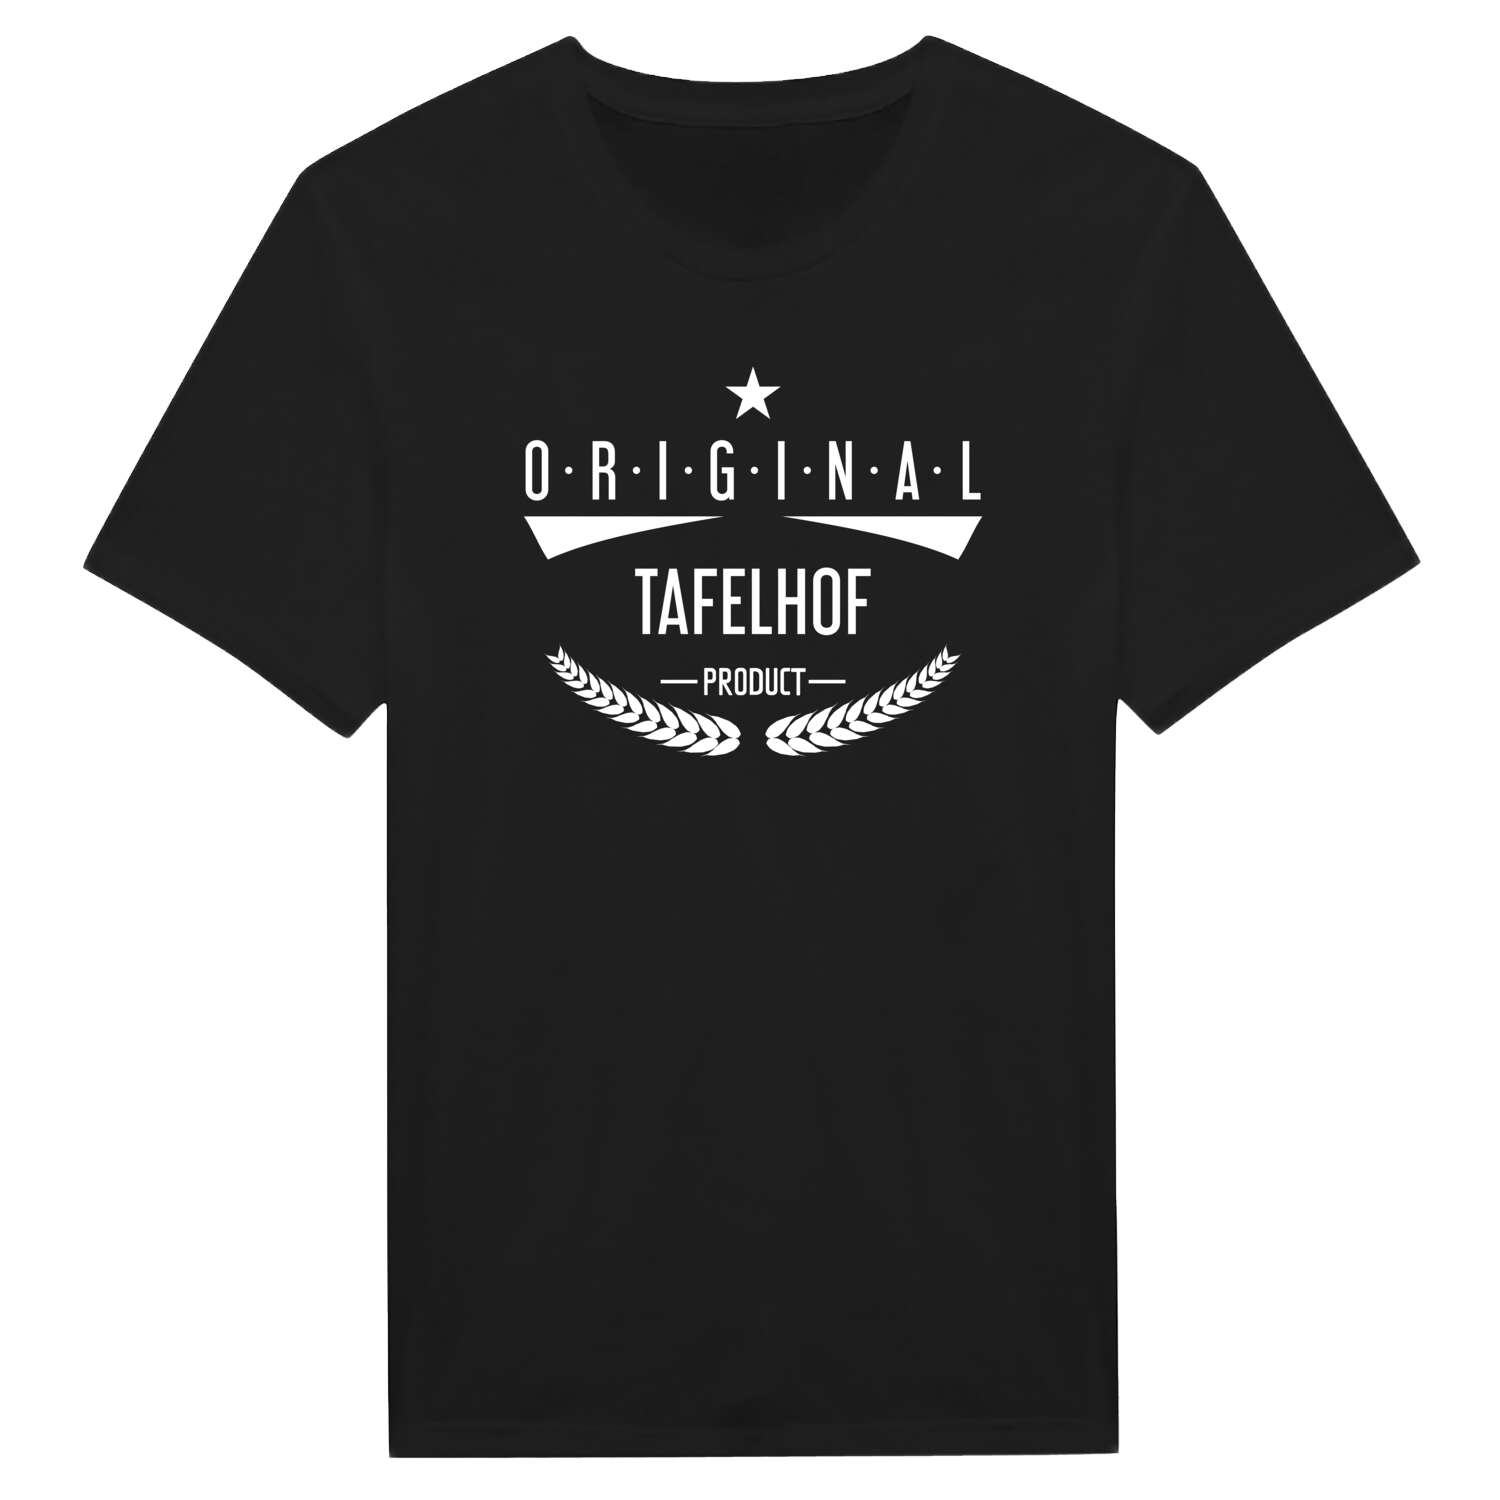 Tafelhof T-Shirt »Original Product«